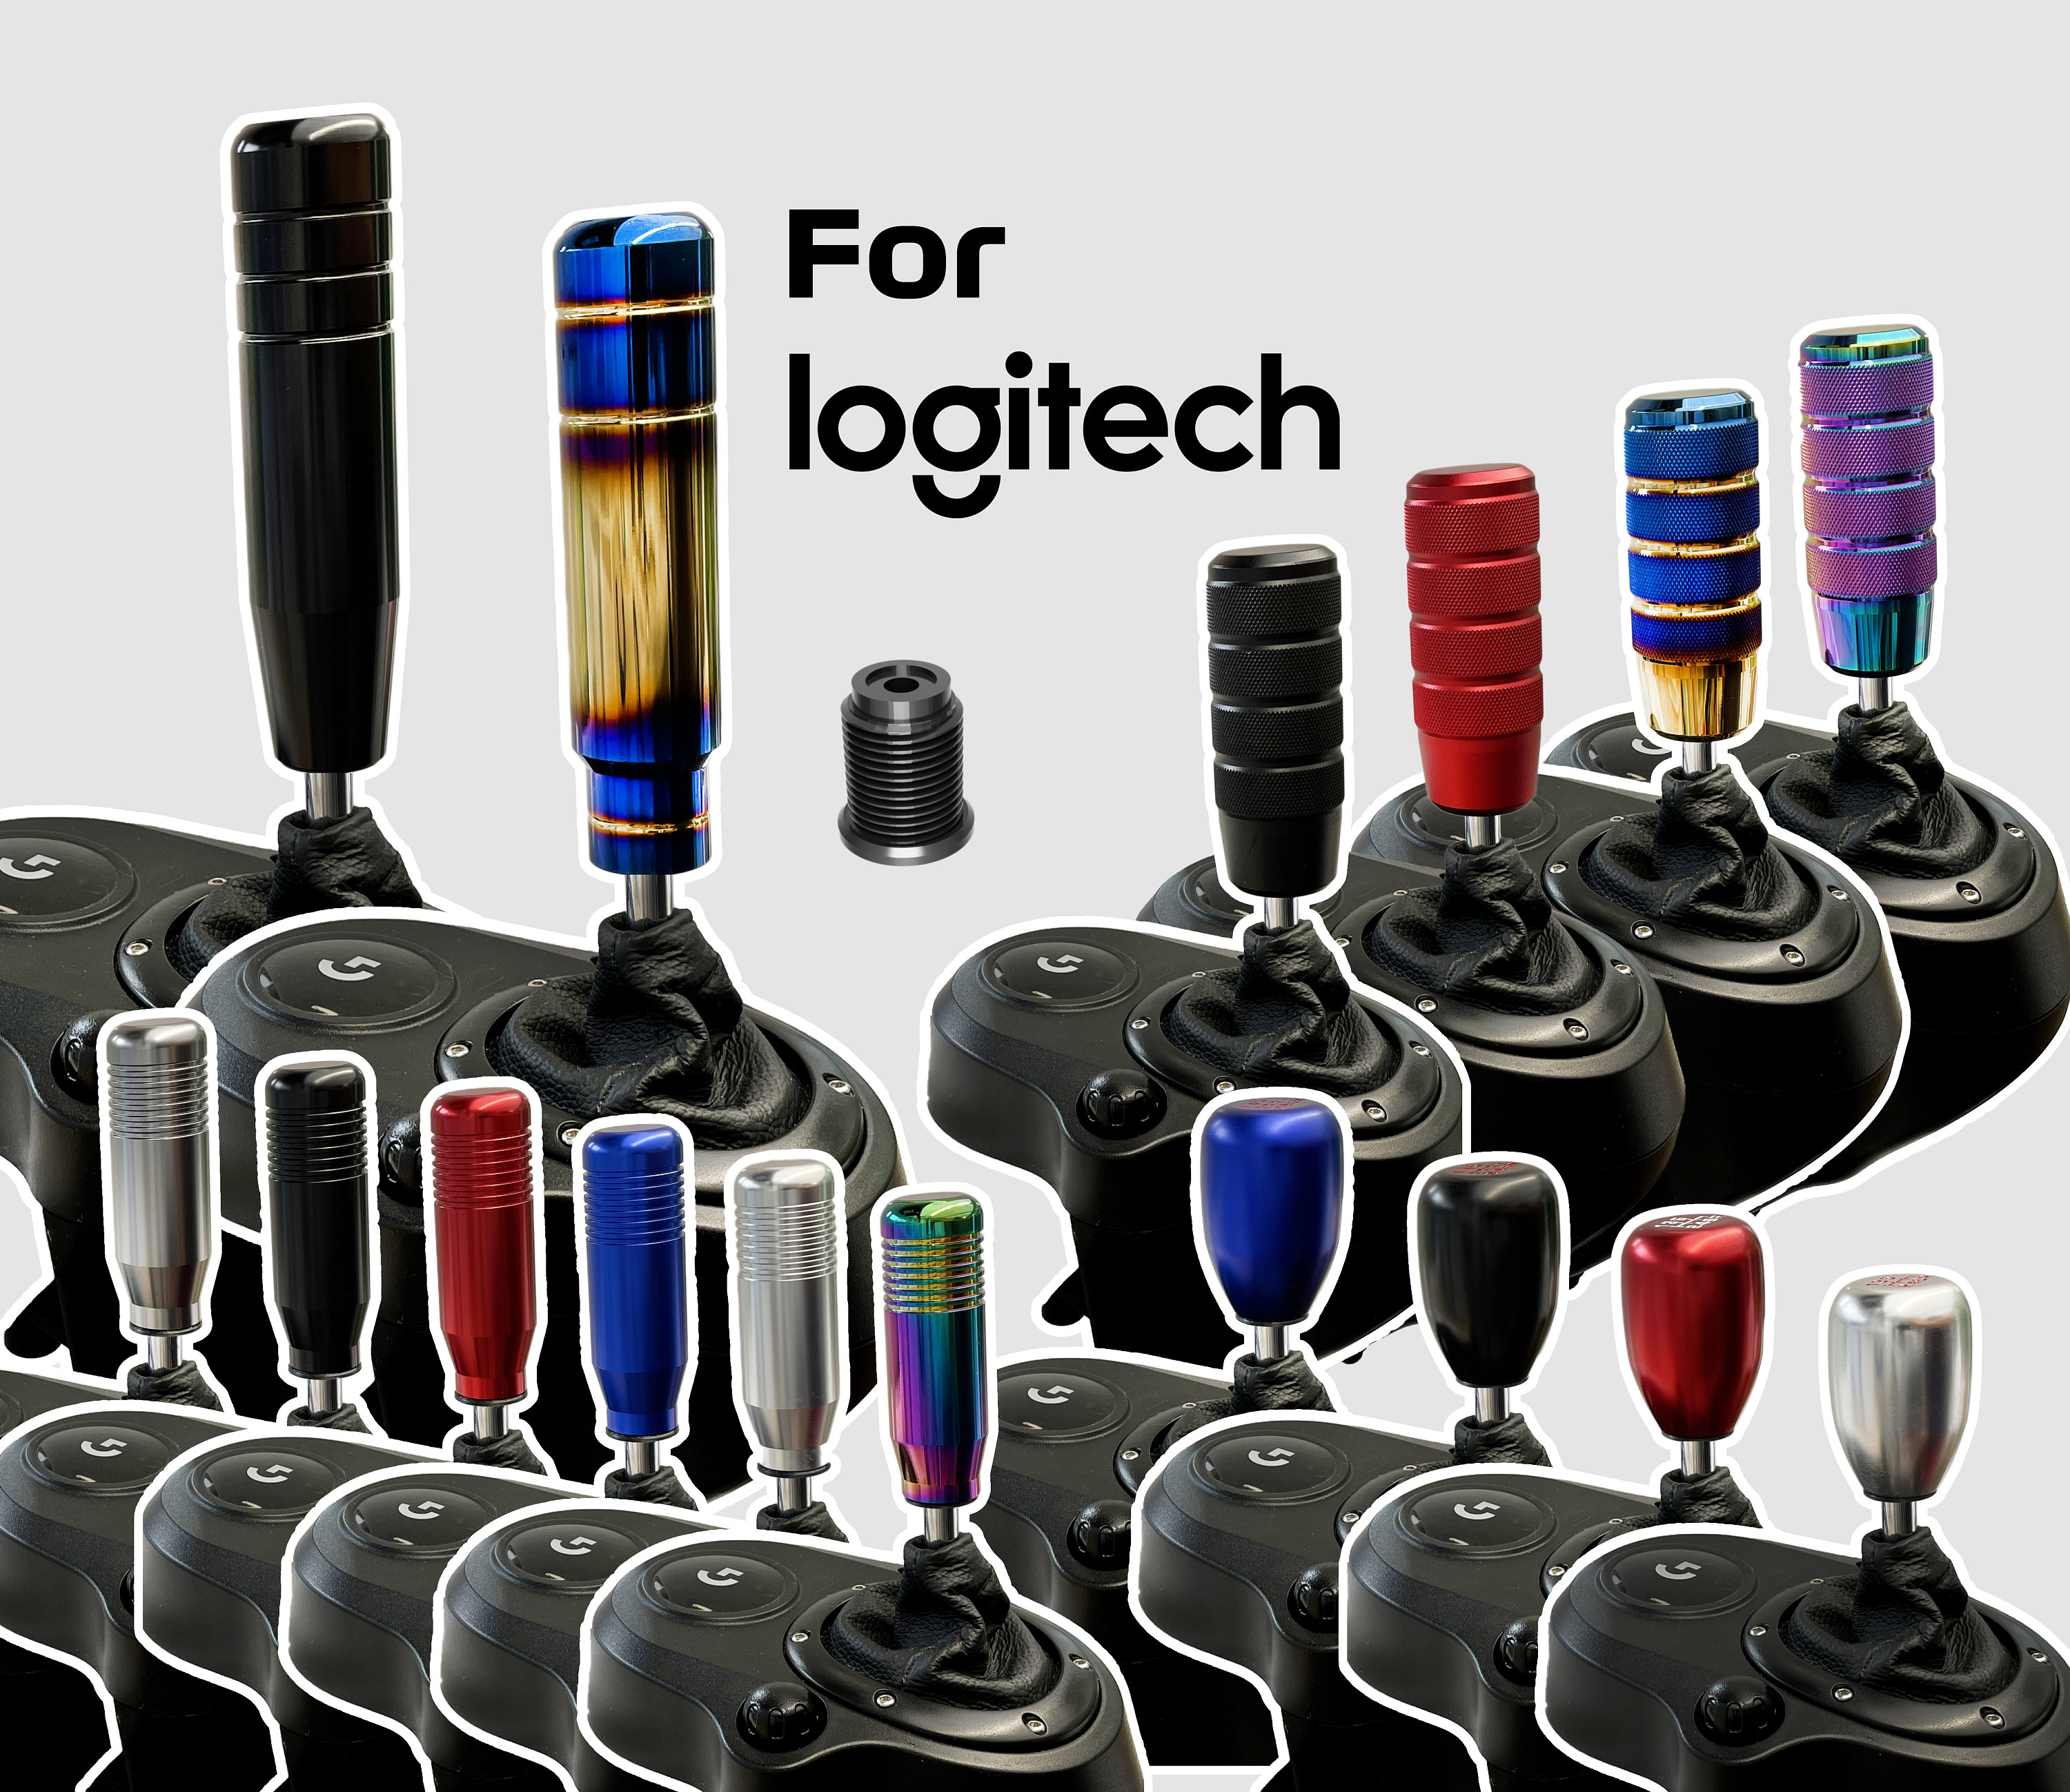 Shifter Mod Kit for Logitech G29/G929/G920/G923/G27/G25 uses